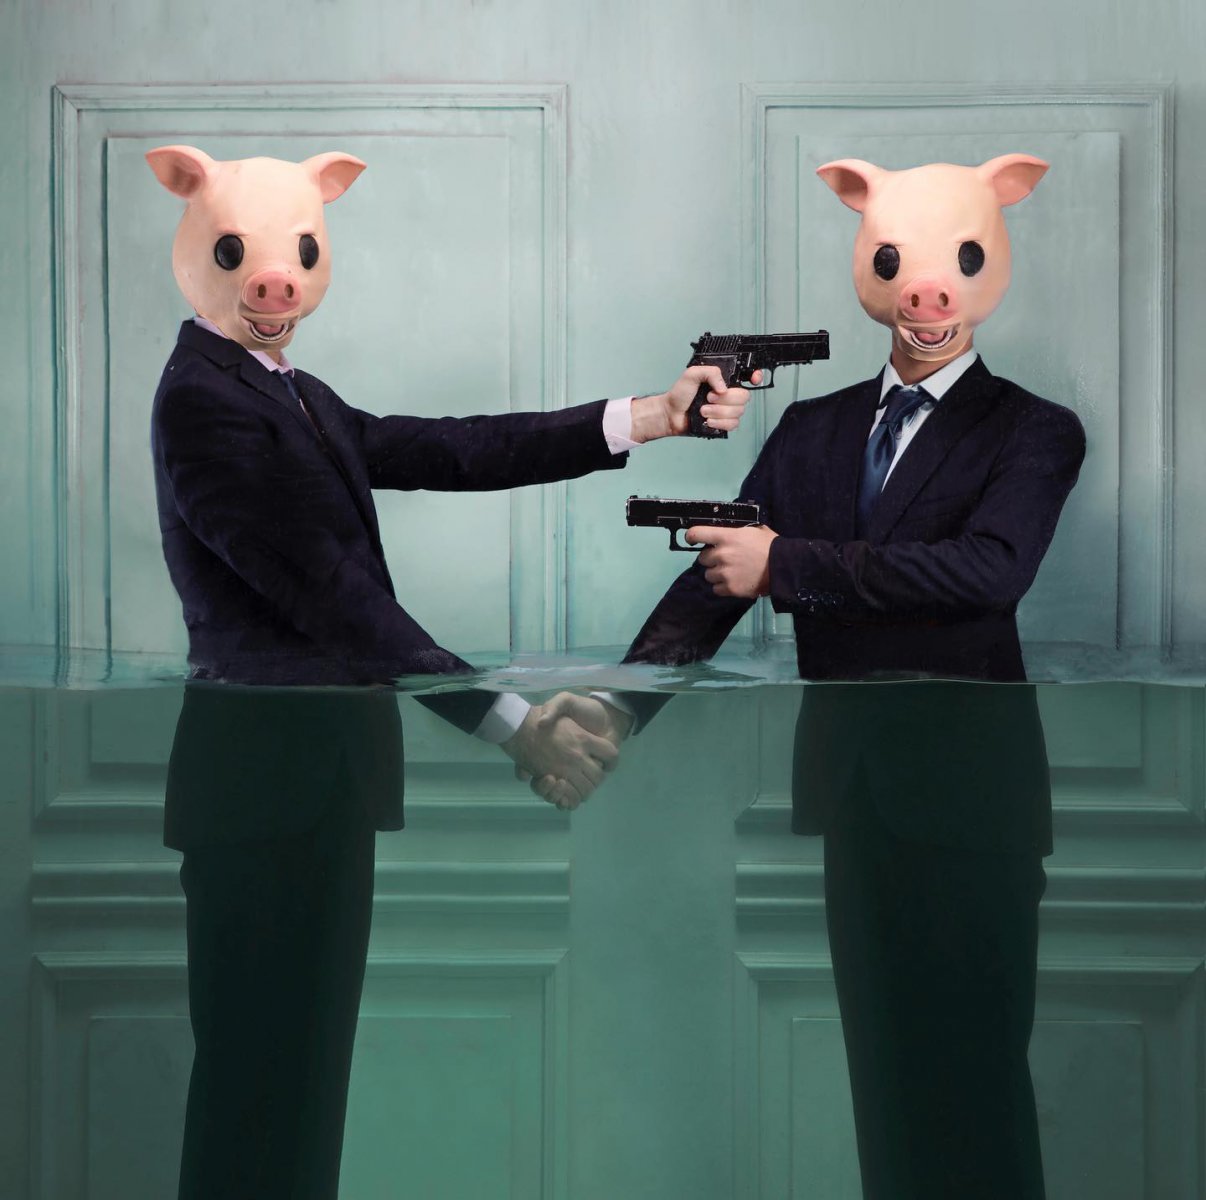 Ruled by pigs - Lara Zankoul